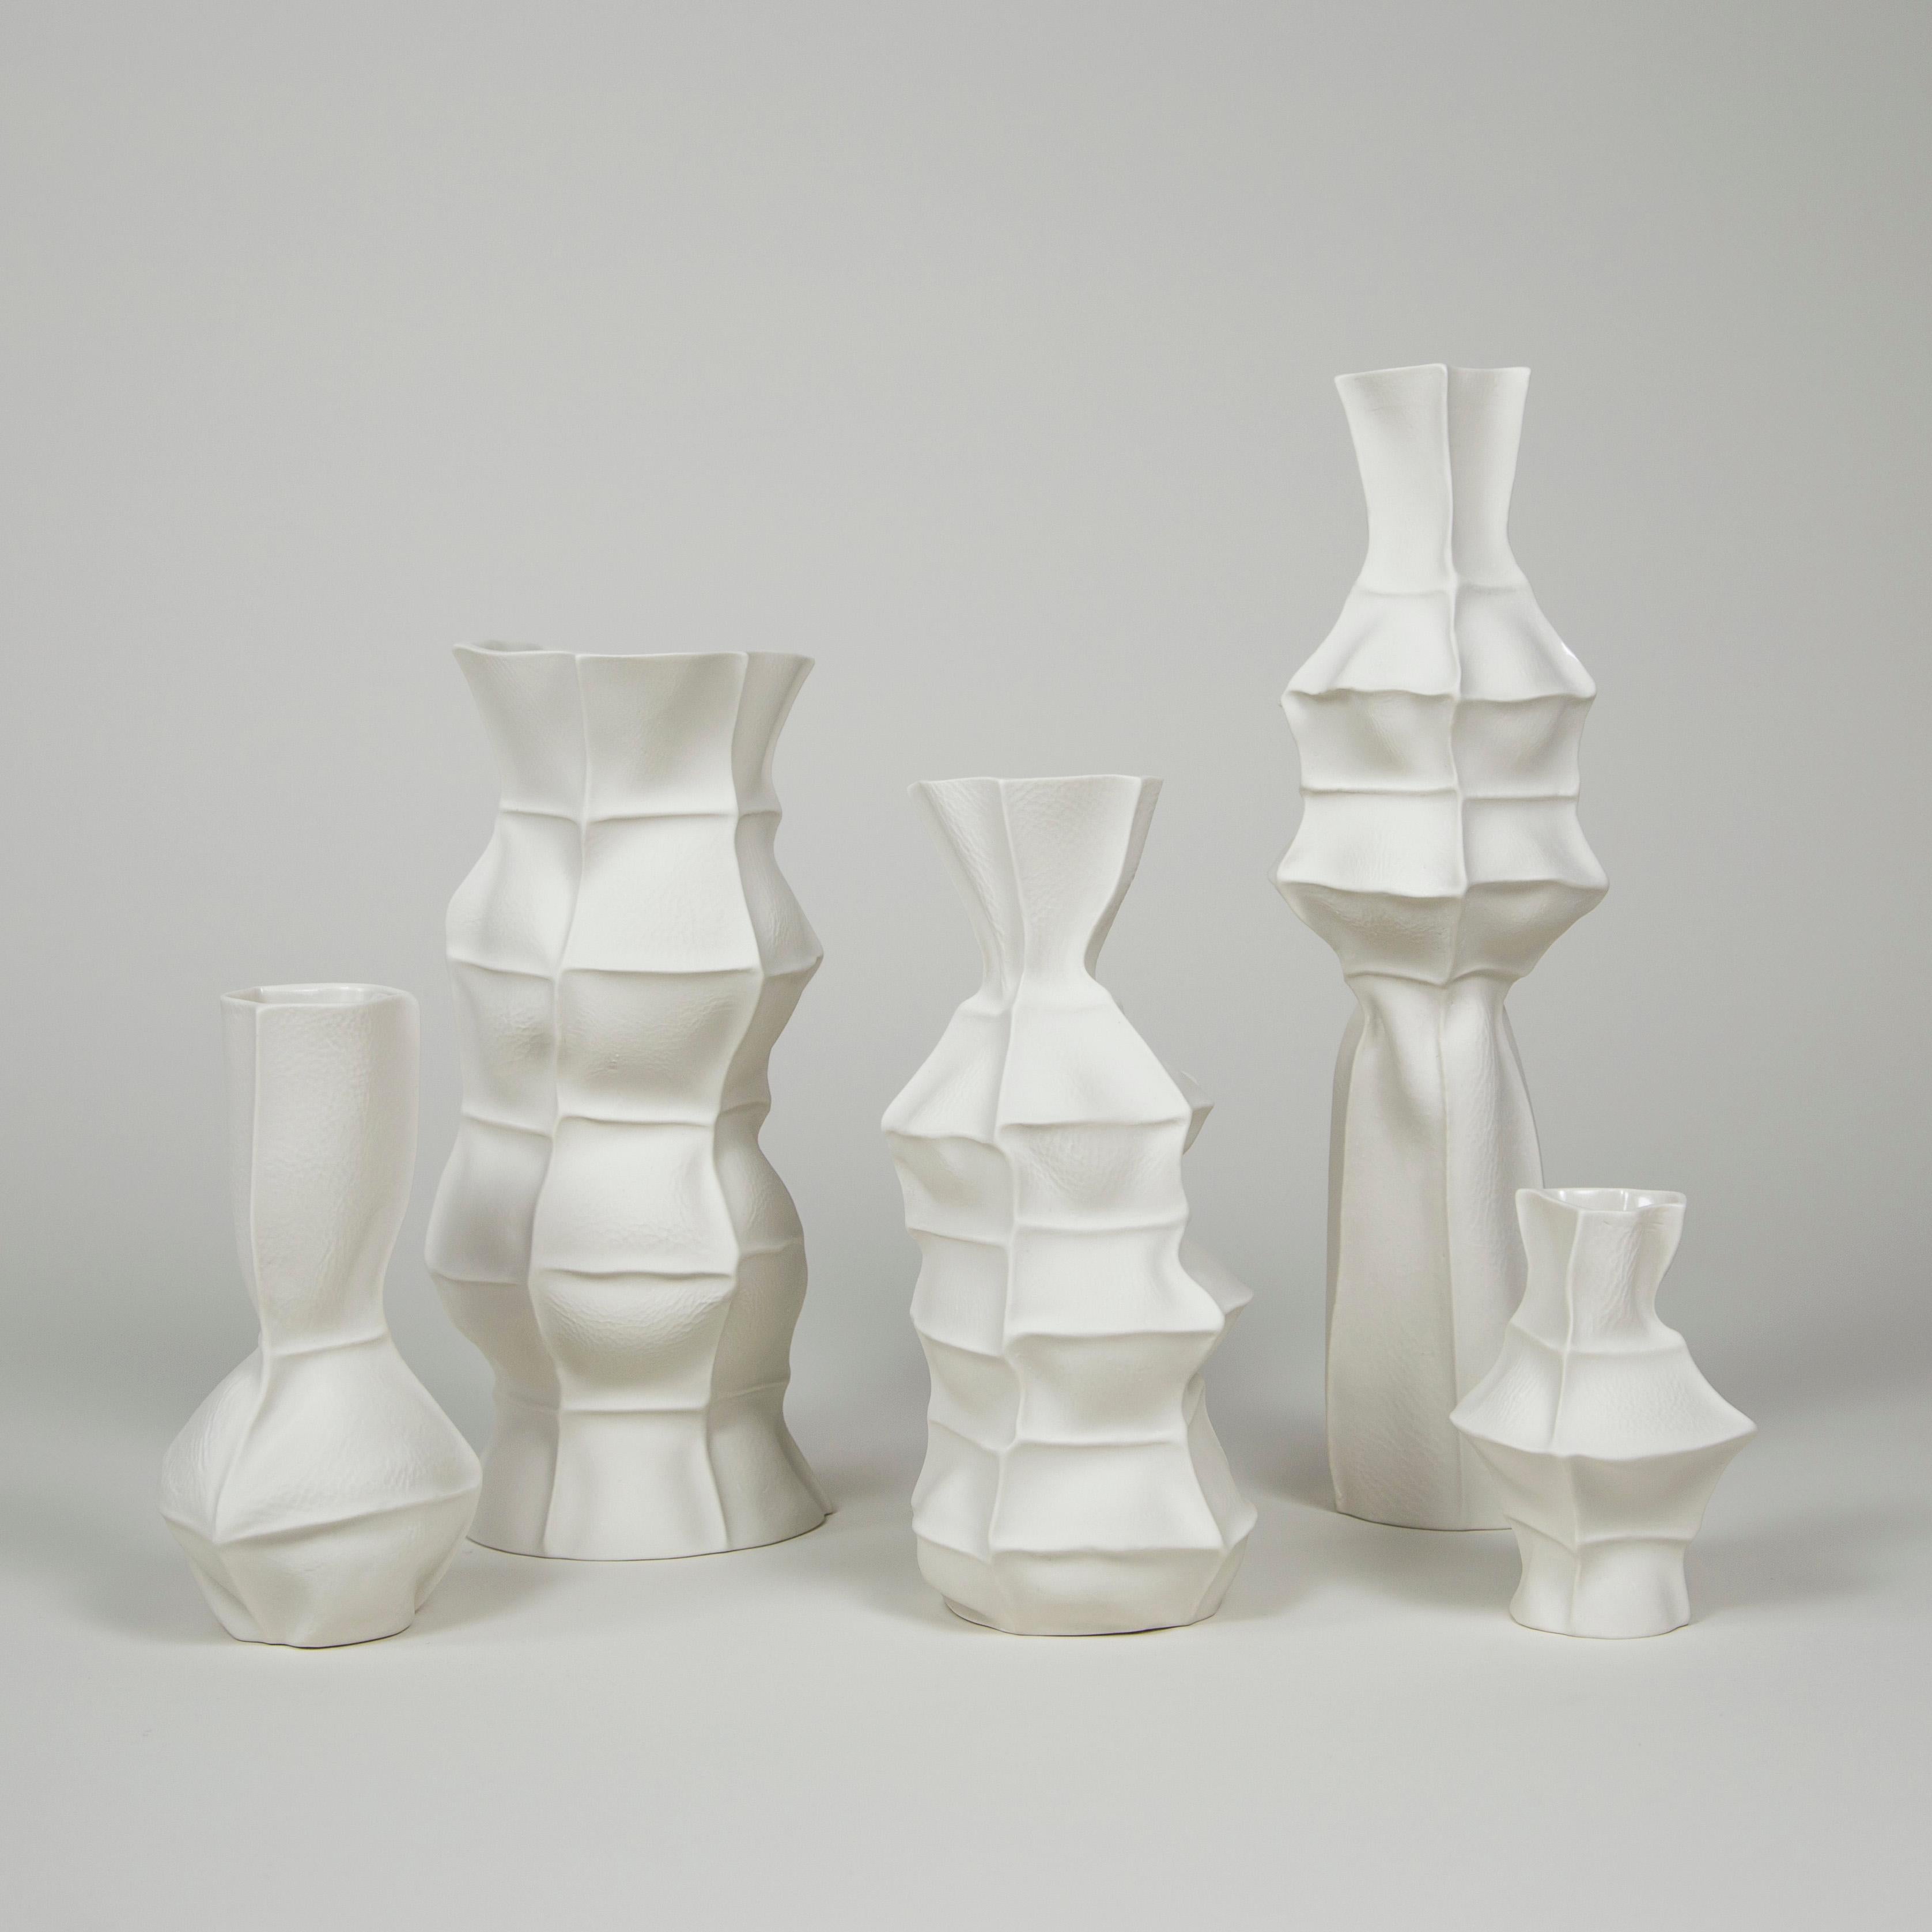 Un ensemble de 5 vases en porcelaine, tactiles et organiques, avec une surface extérieure texturée en cuir et un intérieur émaillé transparent. En raison du processus de production, chaque article est unique. L'ensemble comprend 5 vases comme